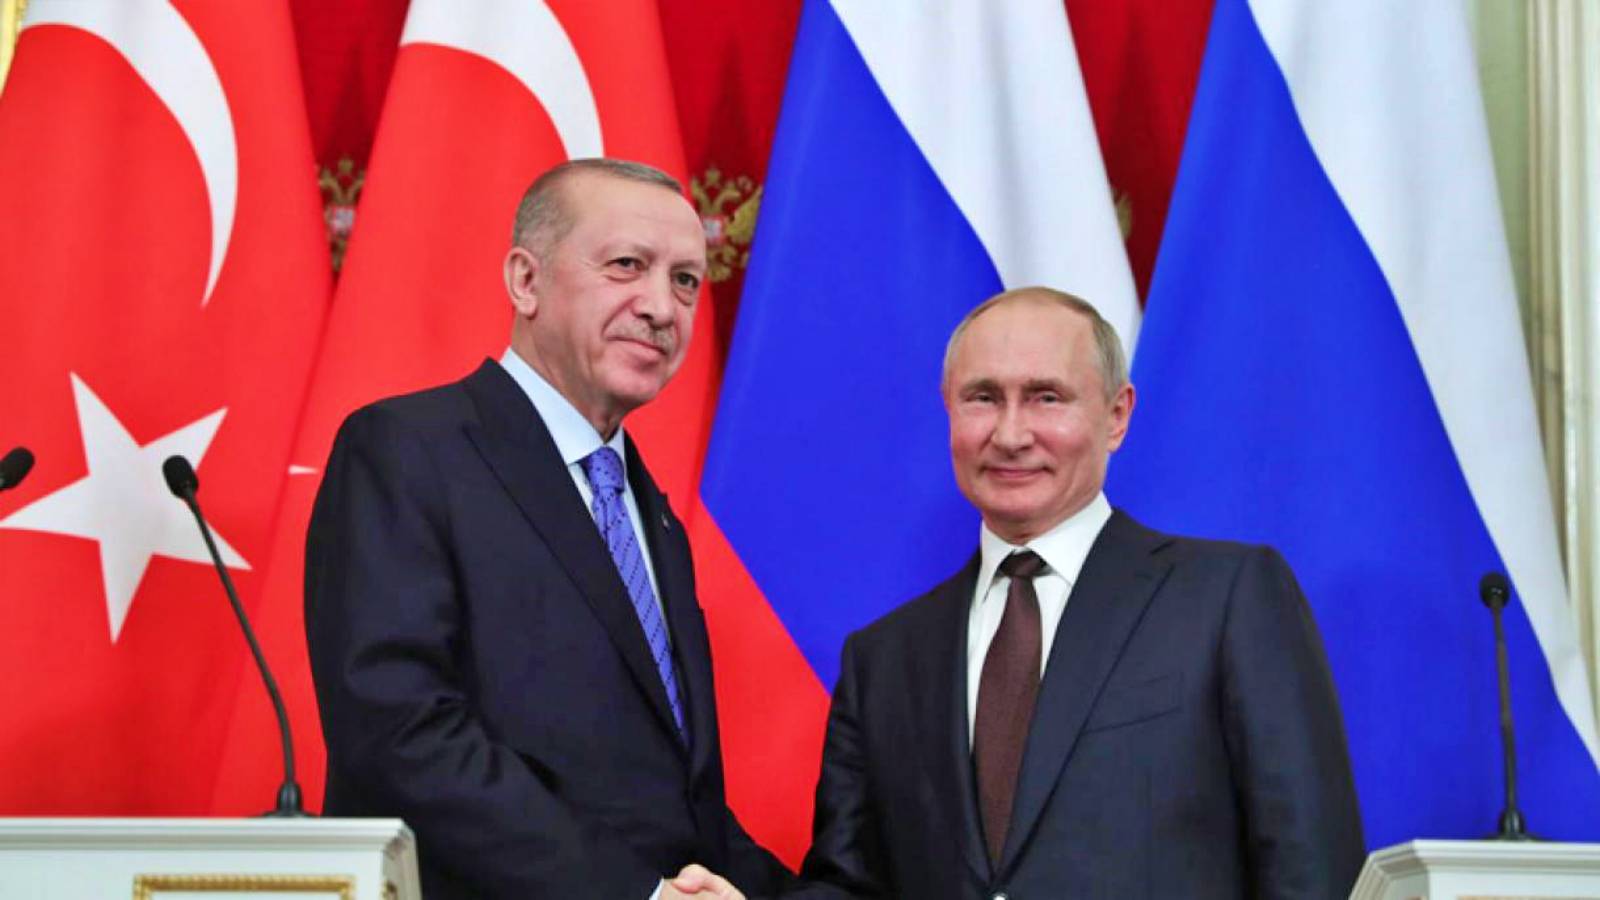 Tyrkiet forsøger at overbevise Rusland om at forlænge "våbenhvilen" i Ukraine